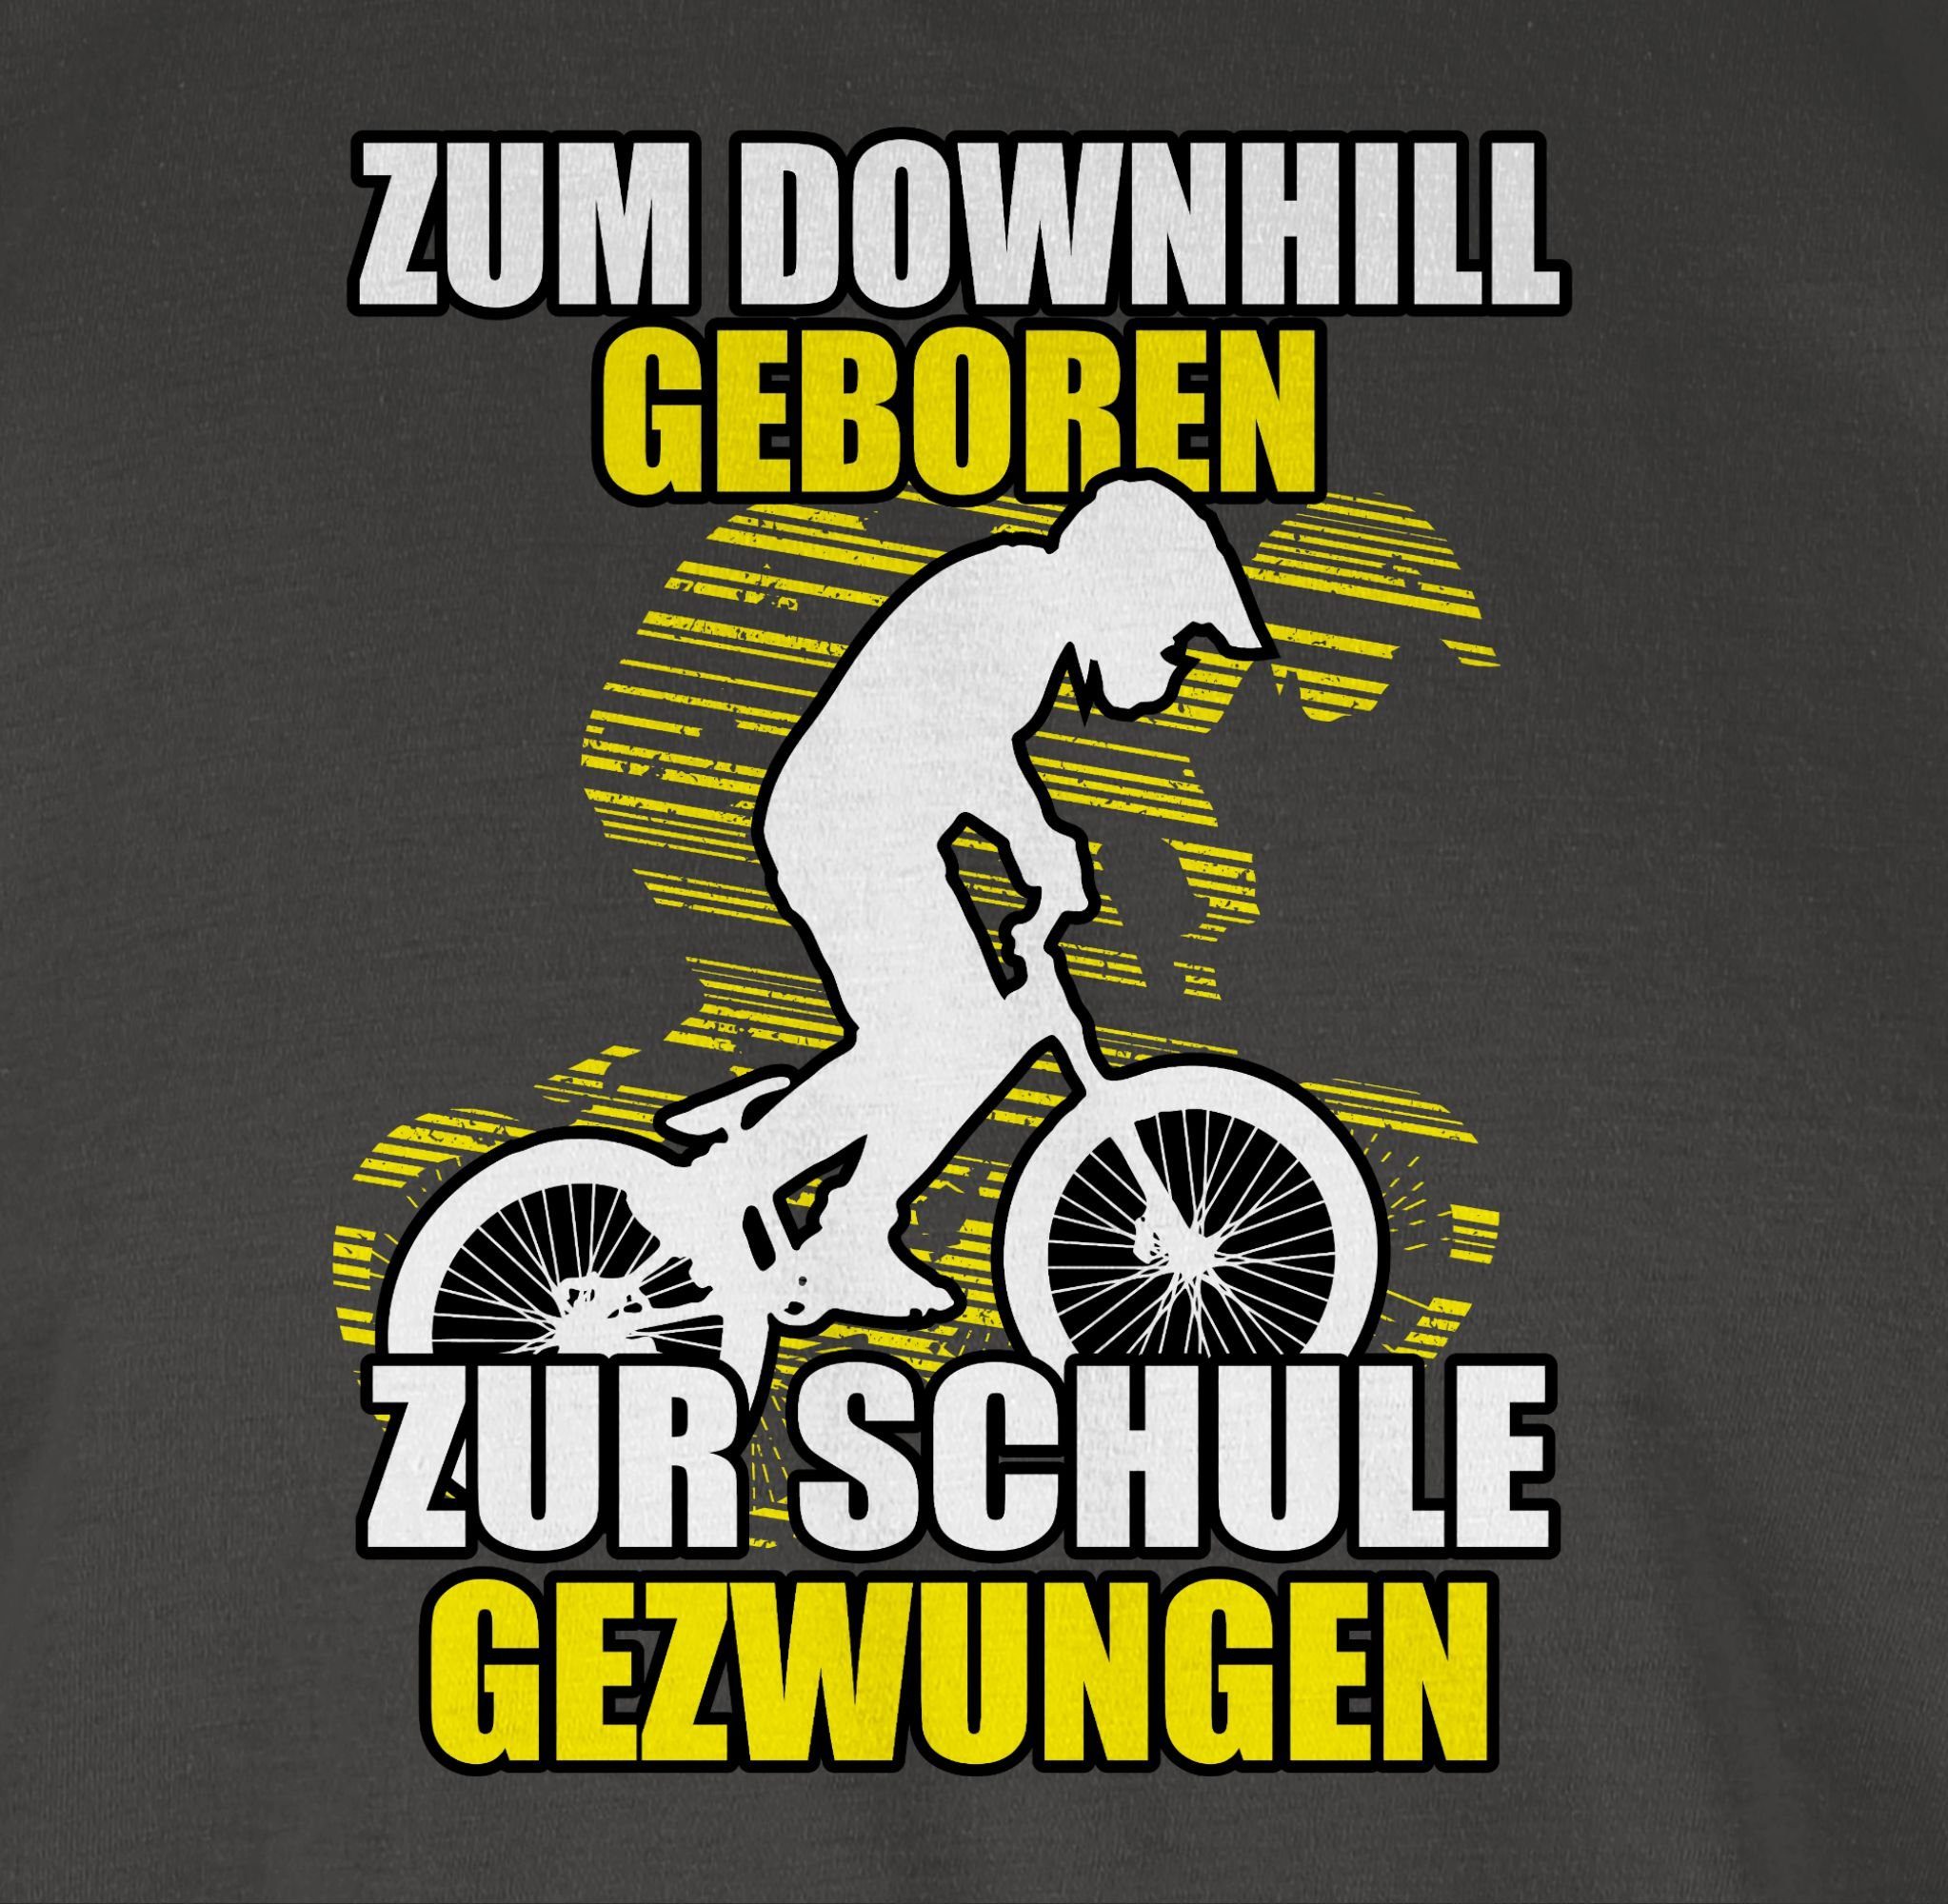 T-Shirt zur Dunkelgrau Fahrrad 01 Downhill Schule Shirtracer Bekleidung gezwungen Radsport geboren Zum